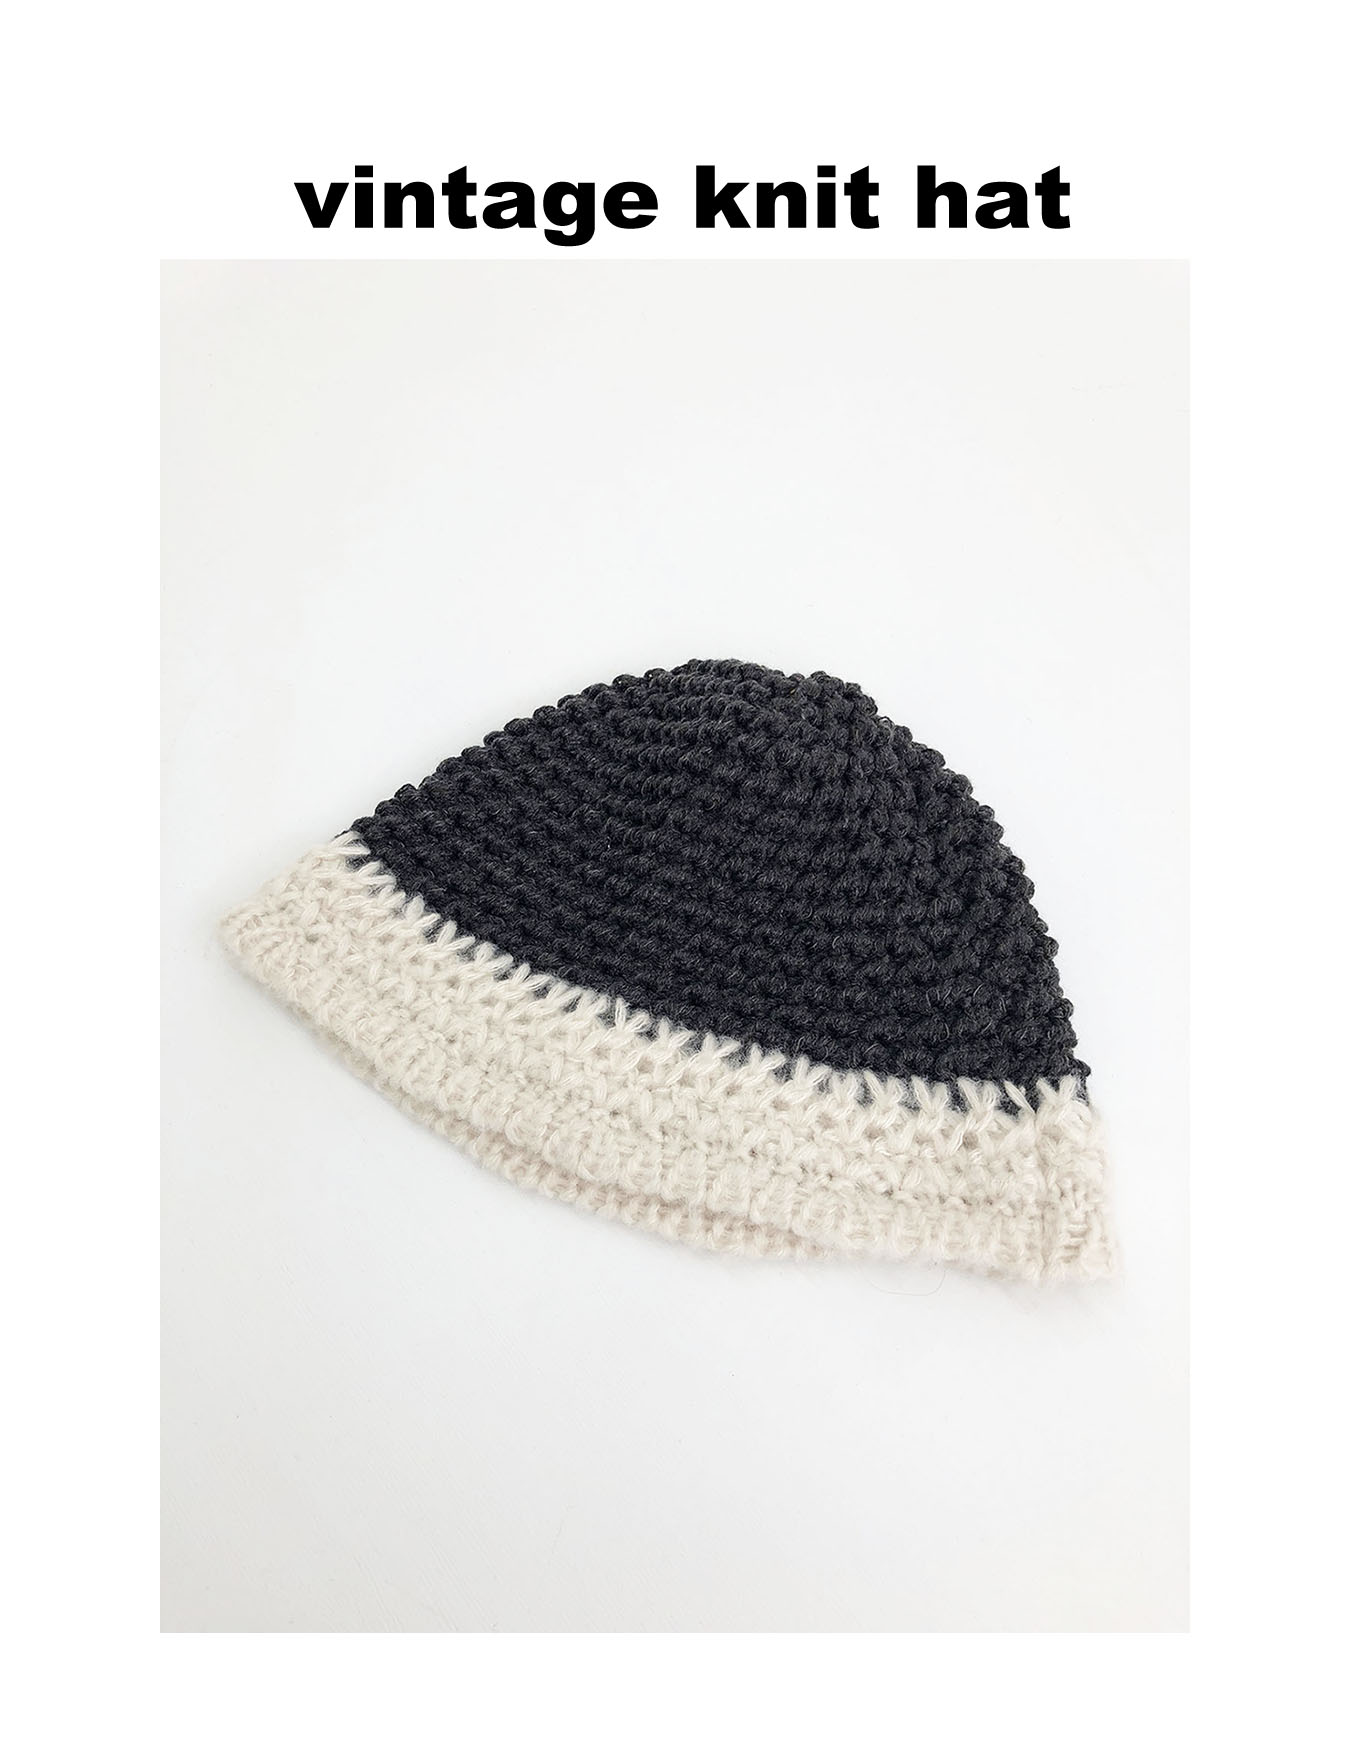 vintage knit hat (1 color)